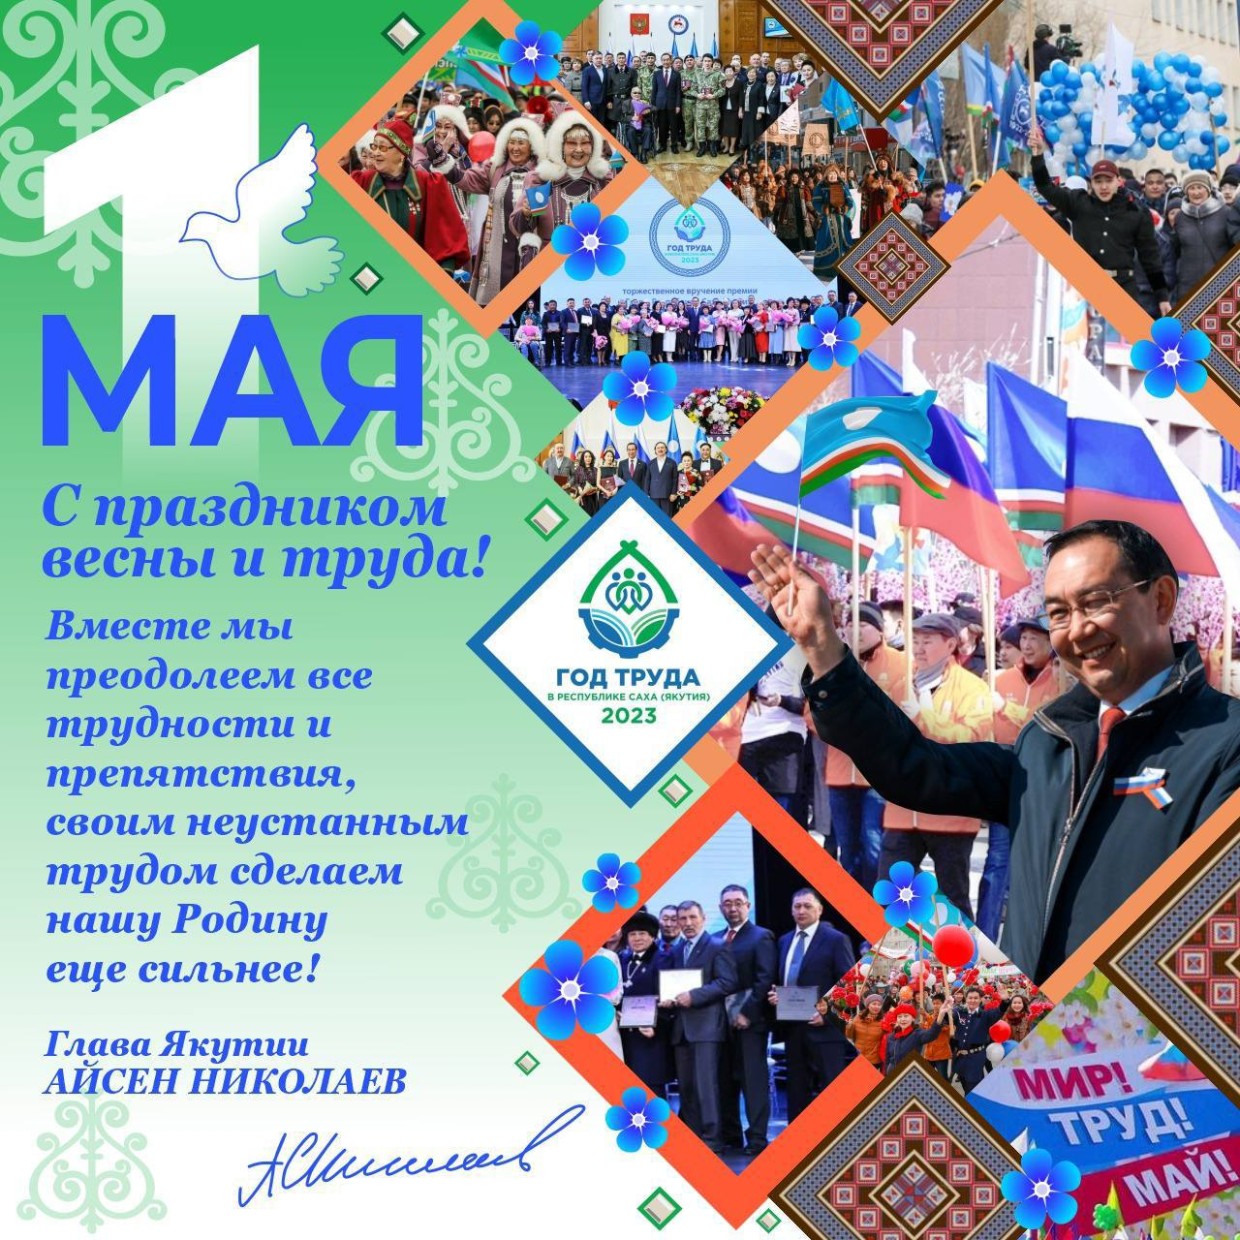 Глава Якутии Айсен Николаев поздравляет с Праздником Весны и Труда